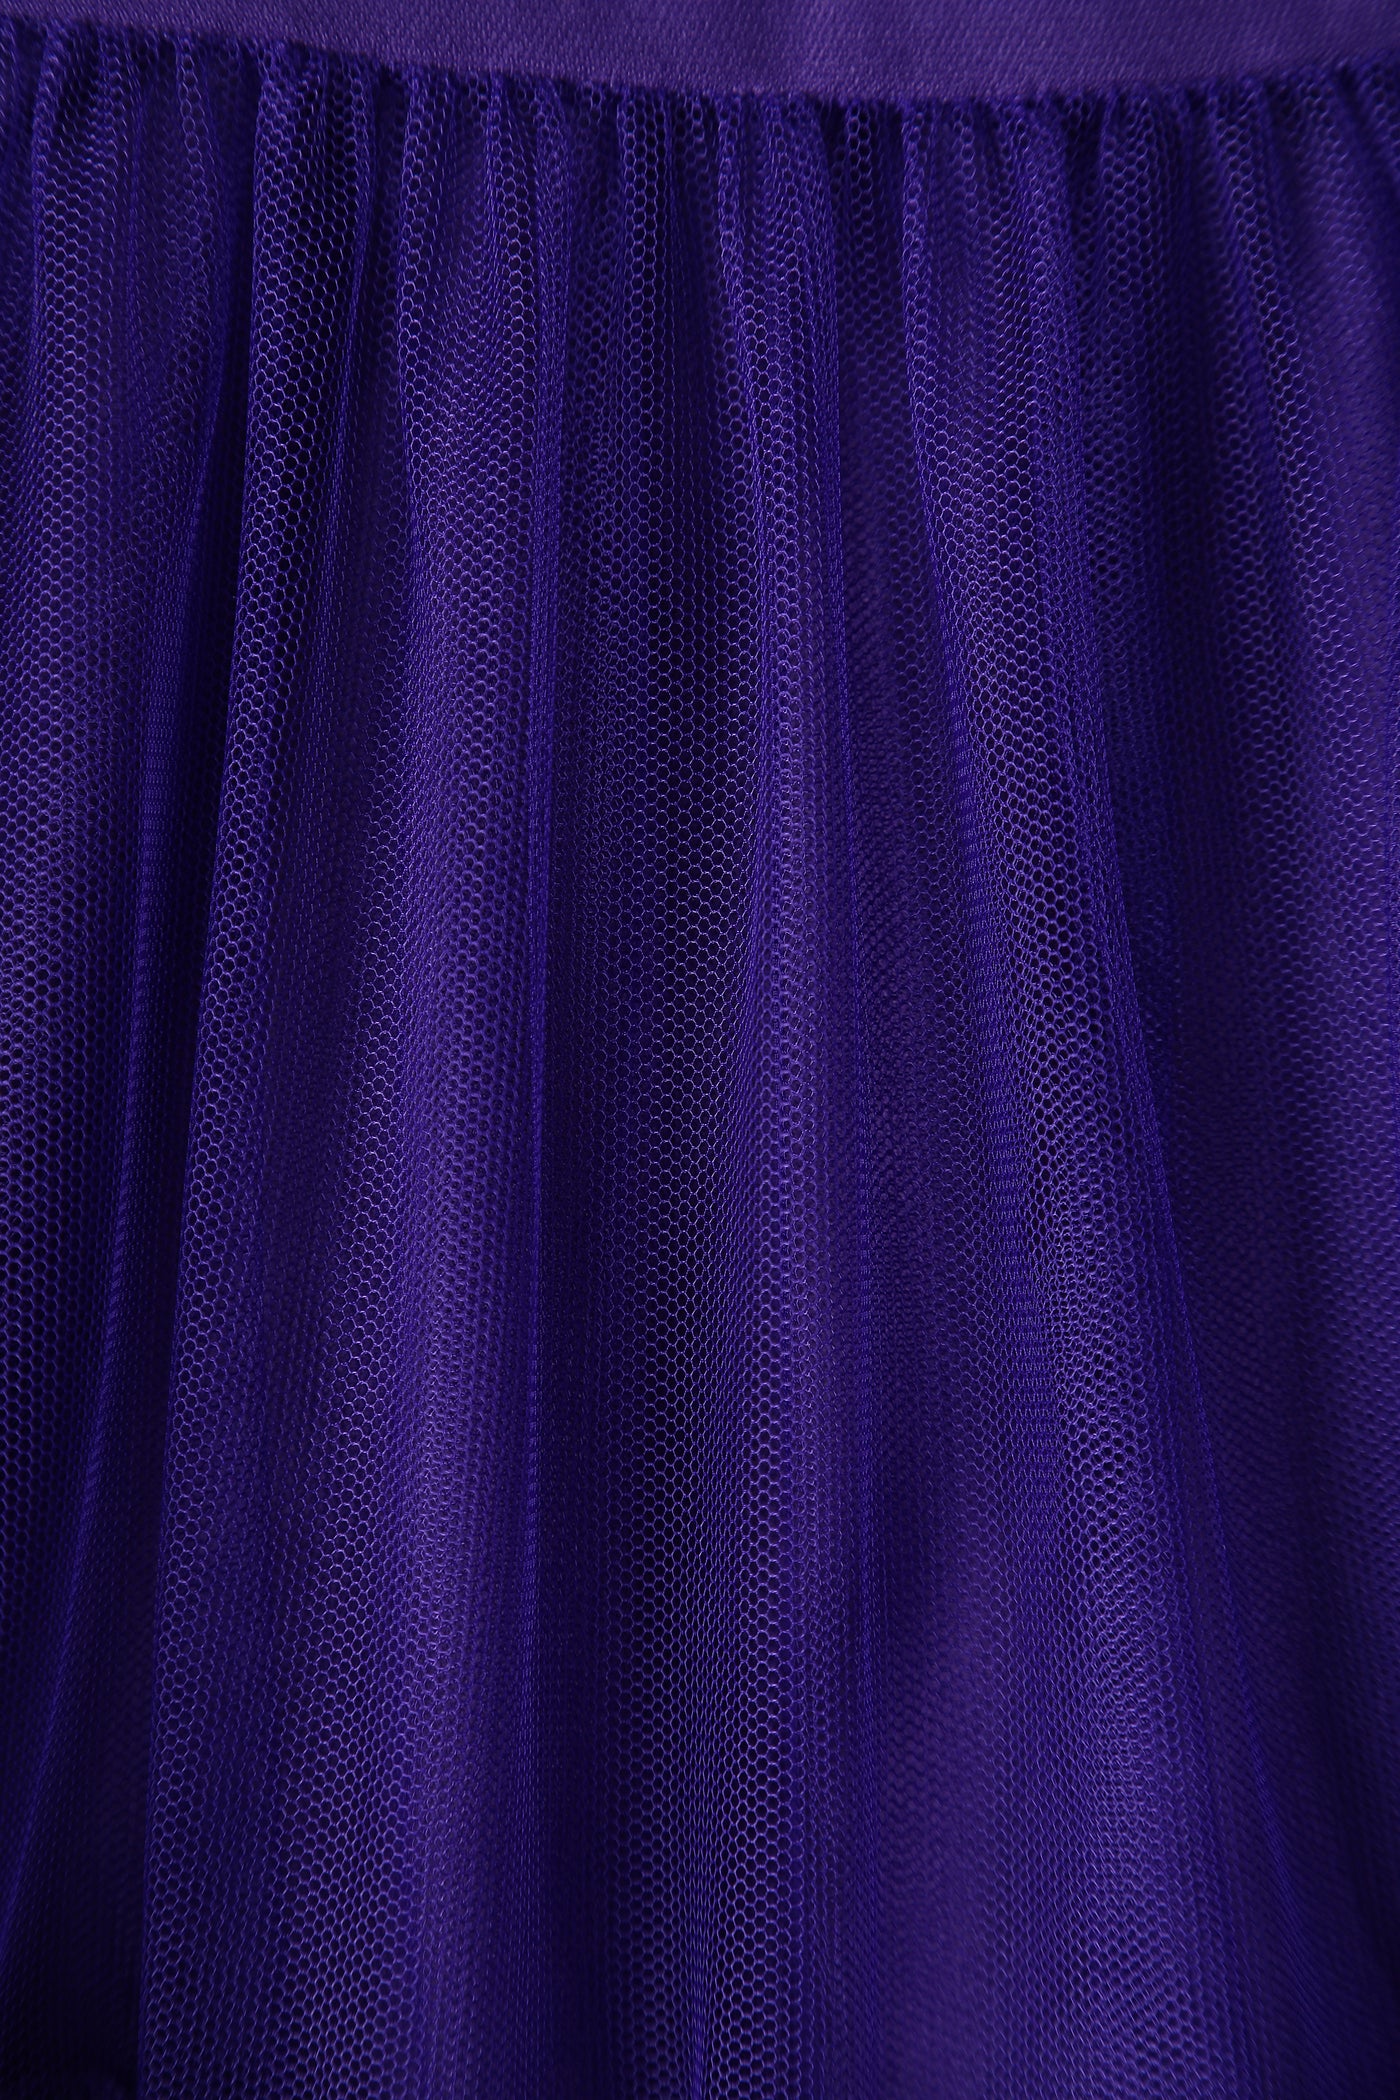 Fluffy Purple Petticoat